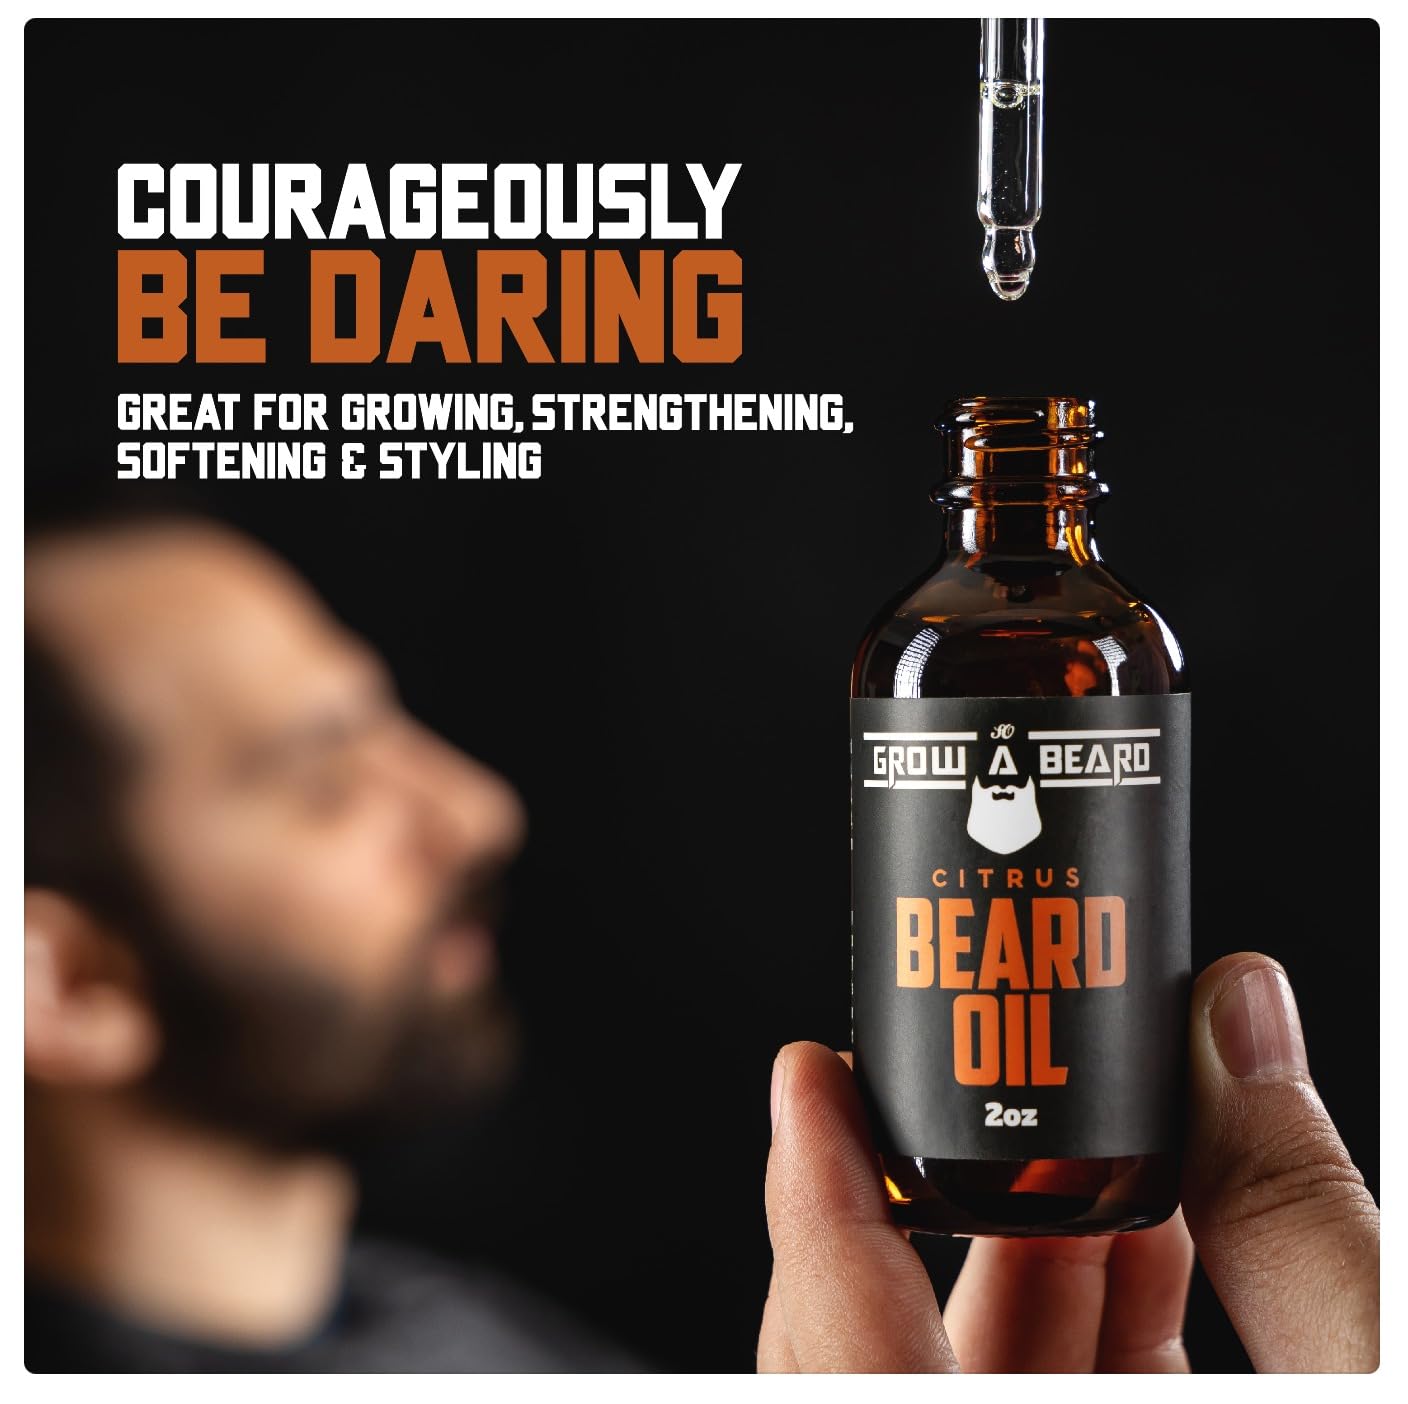 Beard Oil For Men, Beard Growth Oil, Beard Care, Best Beard Oil, All Natural, Sandalwood & Citrus Scent, Mens Gifts (2 Pack Of 2 oz)